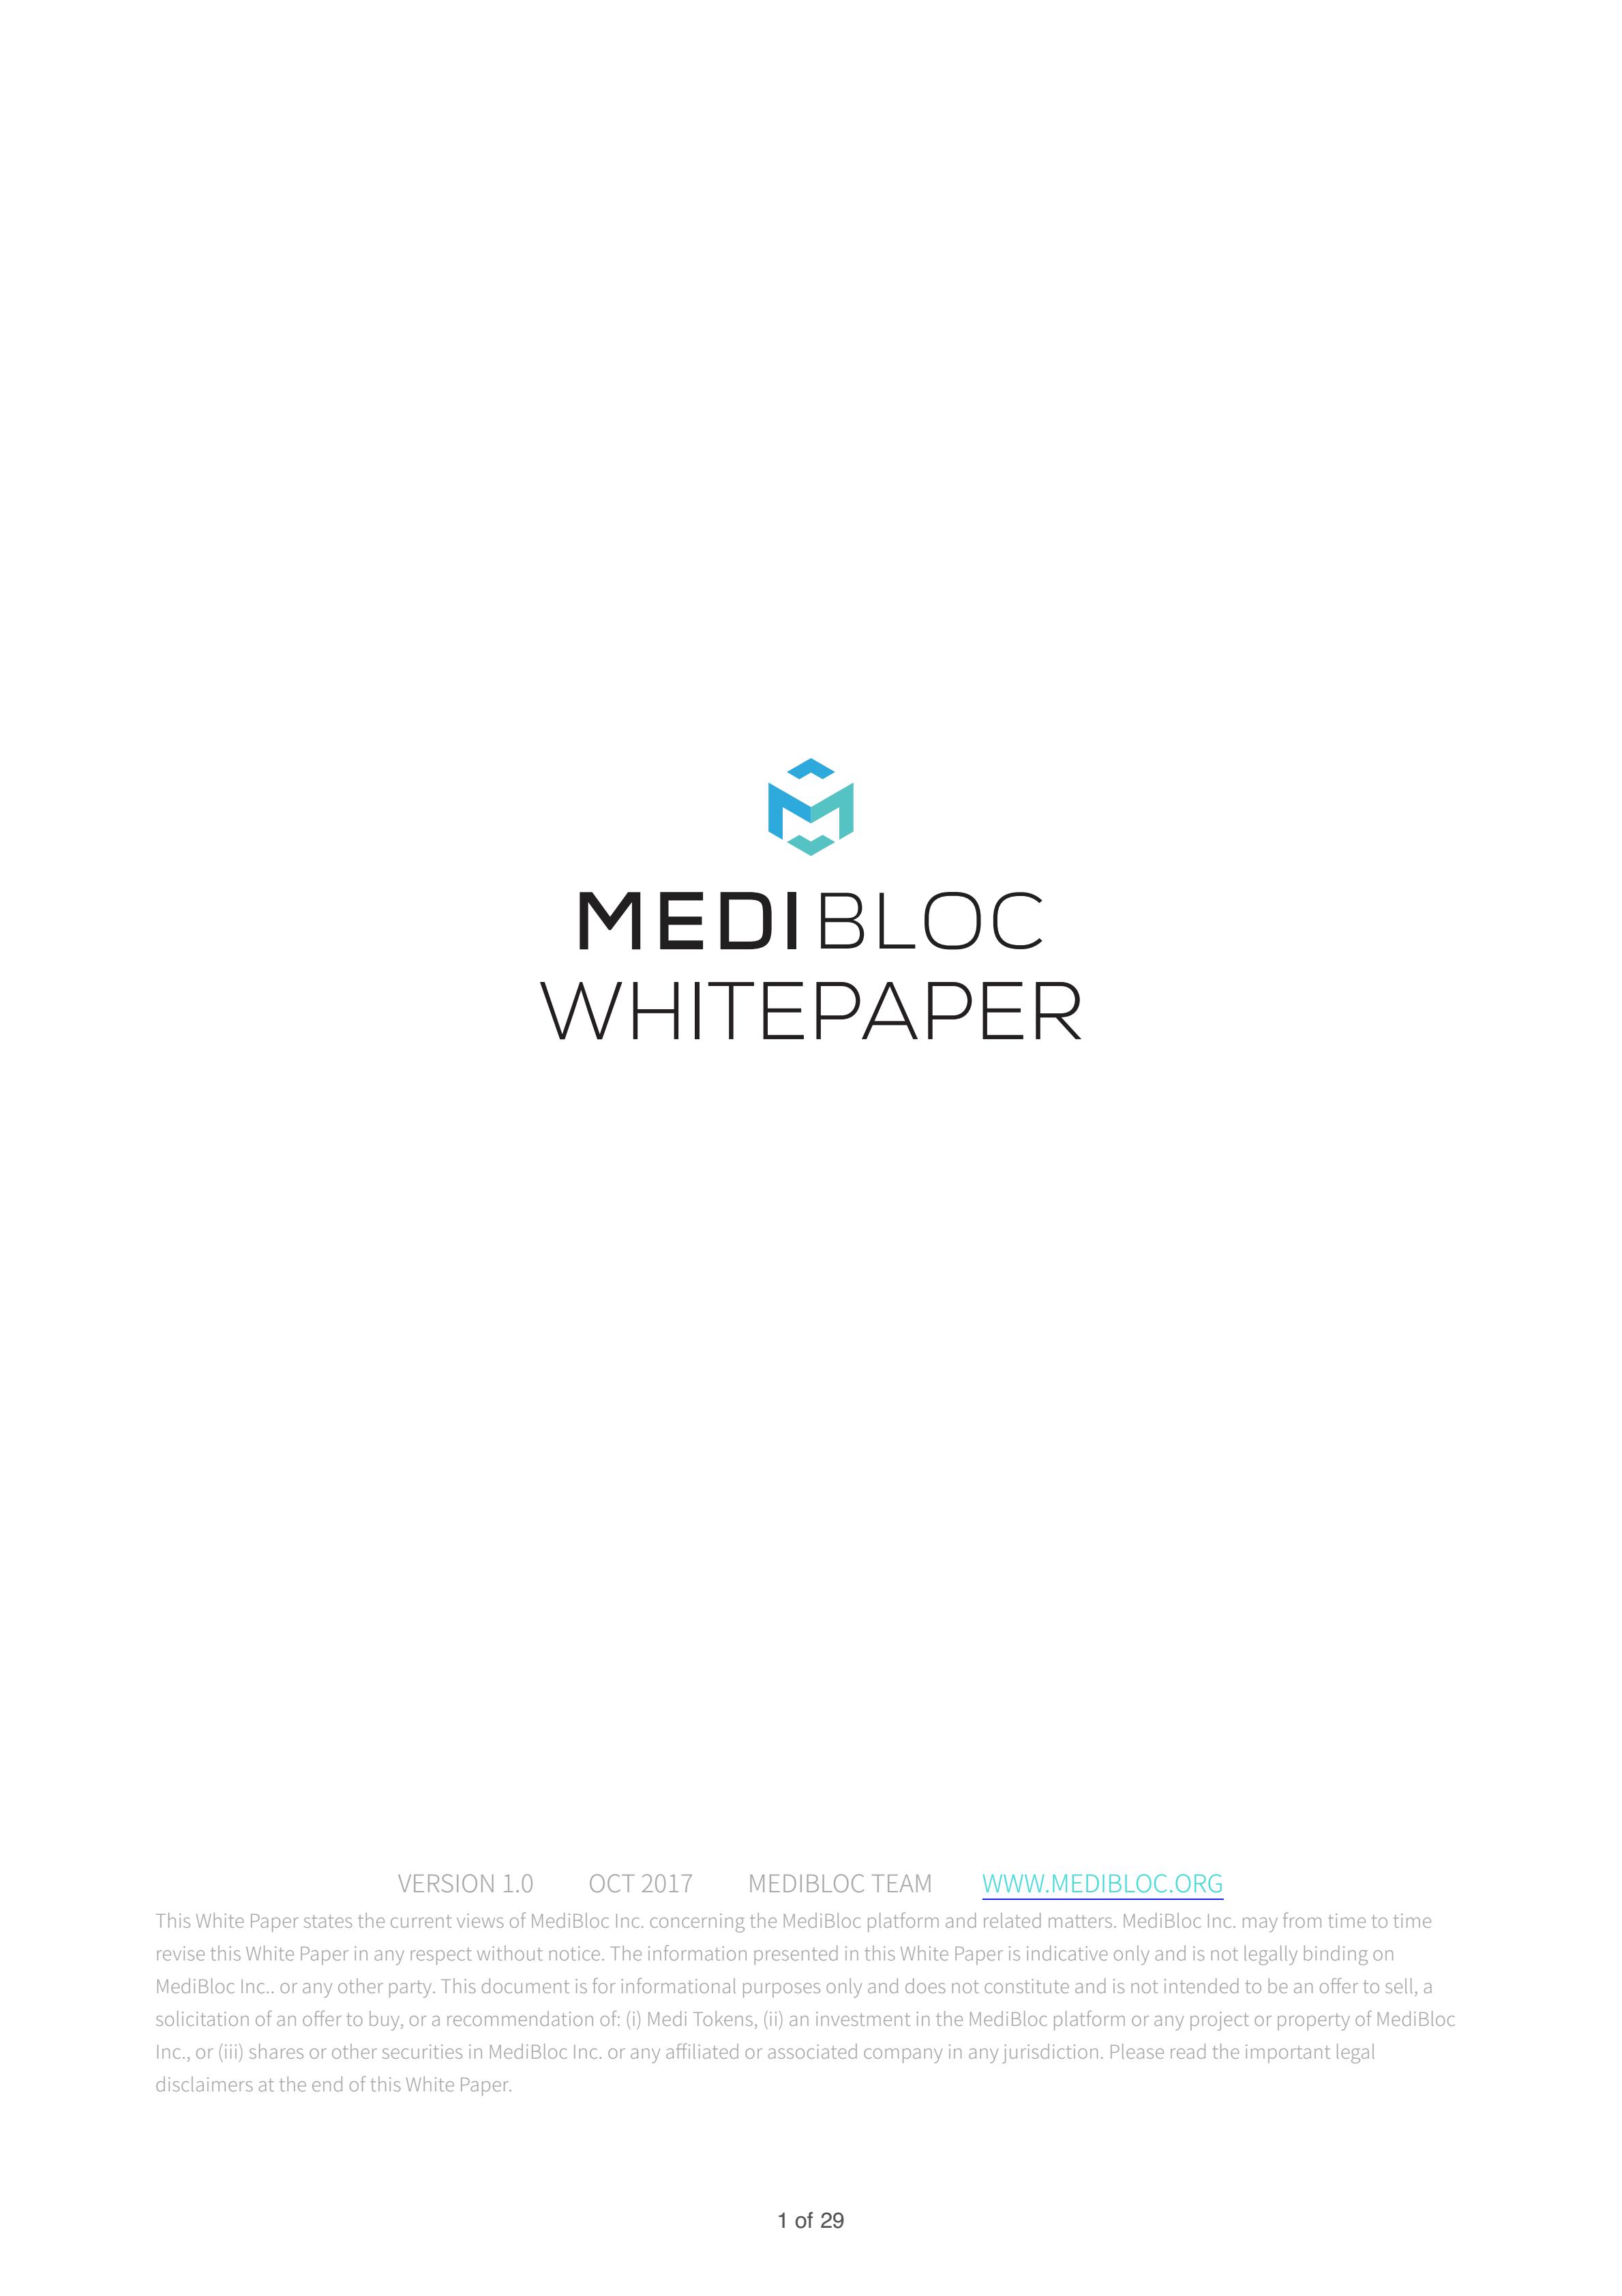 MEDX_medibloc_whitepaper_jp_00.jpg